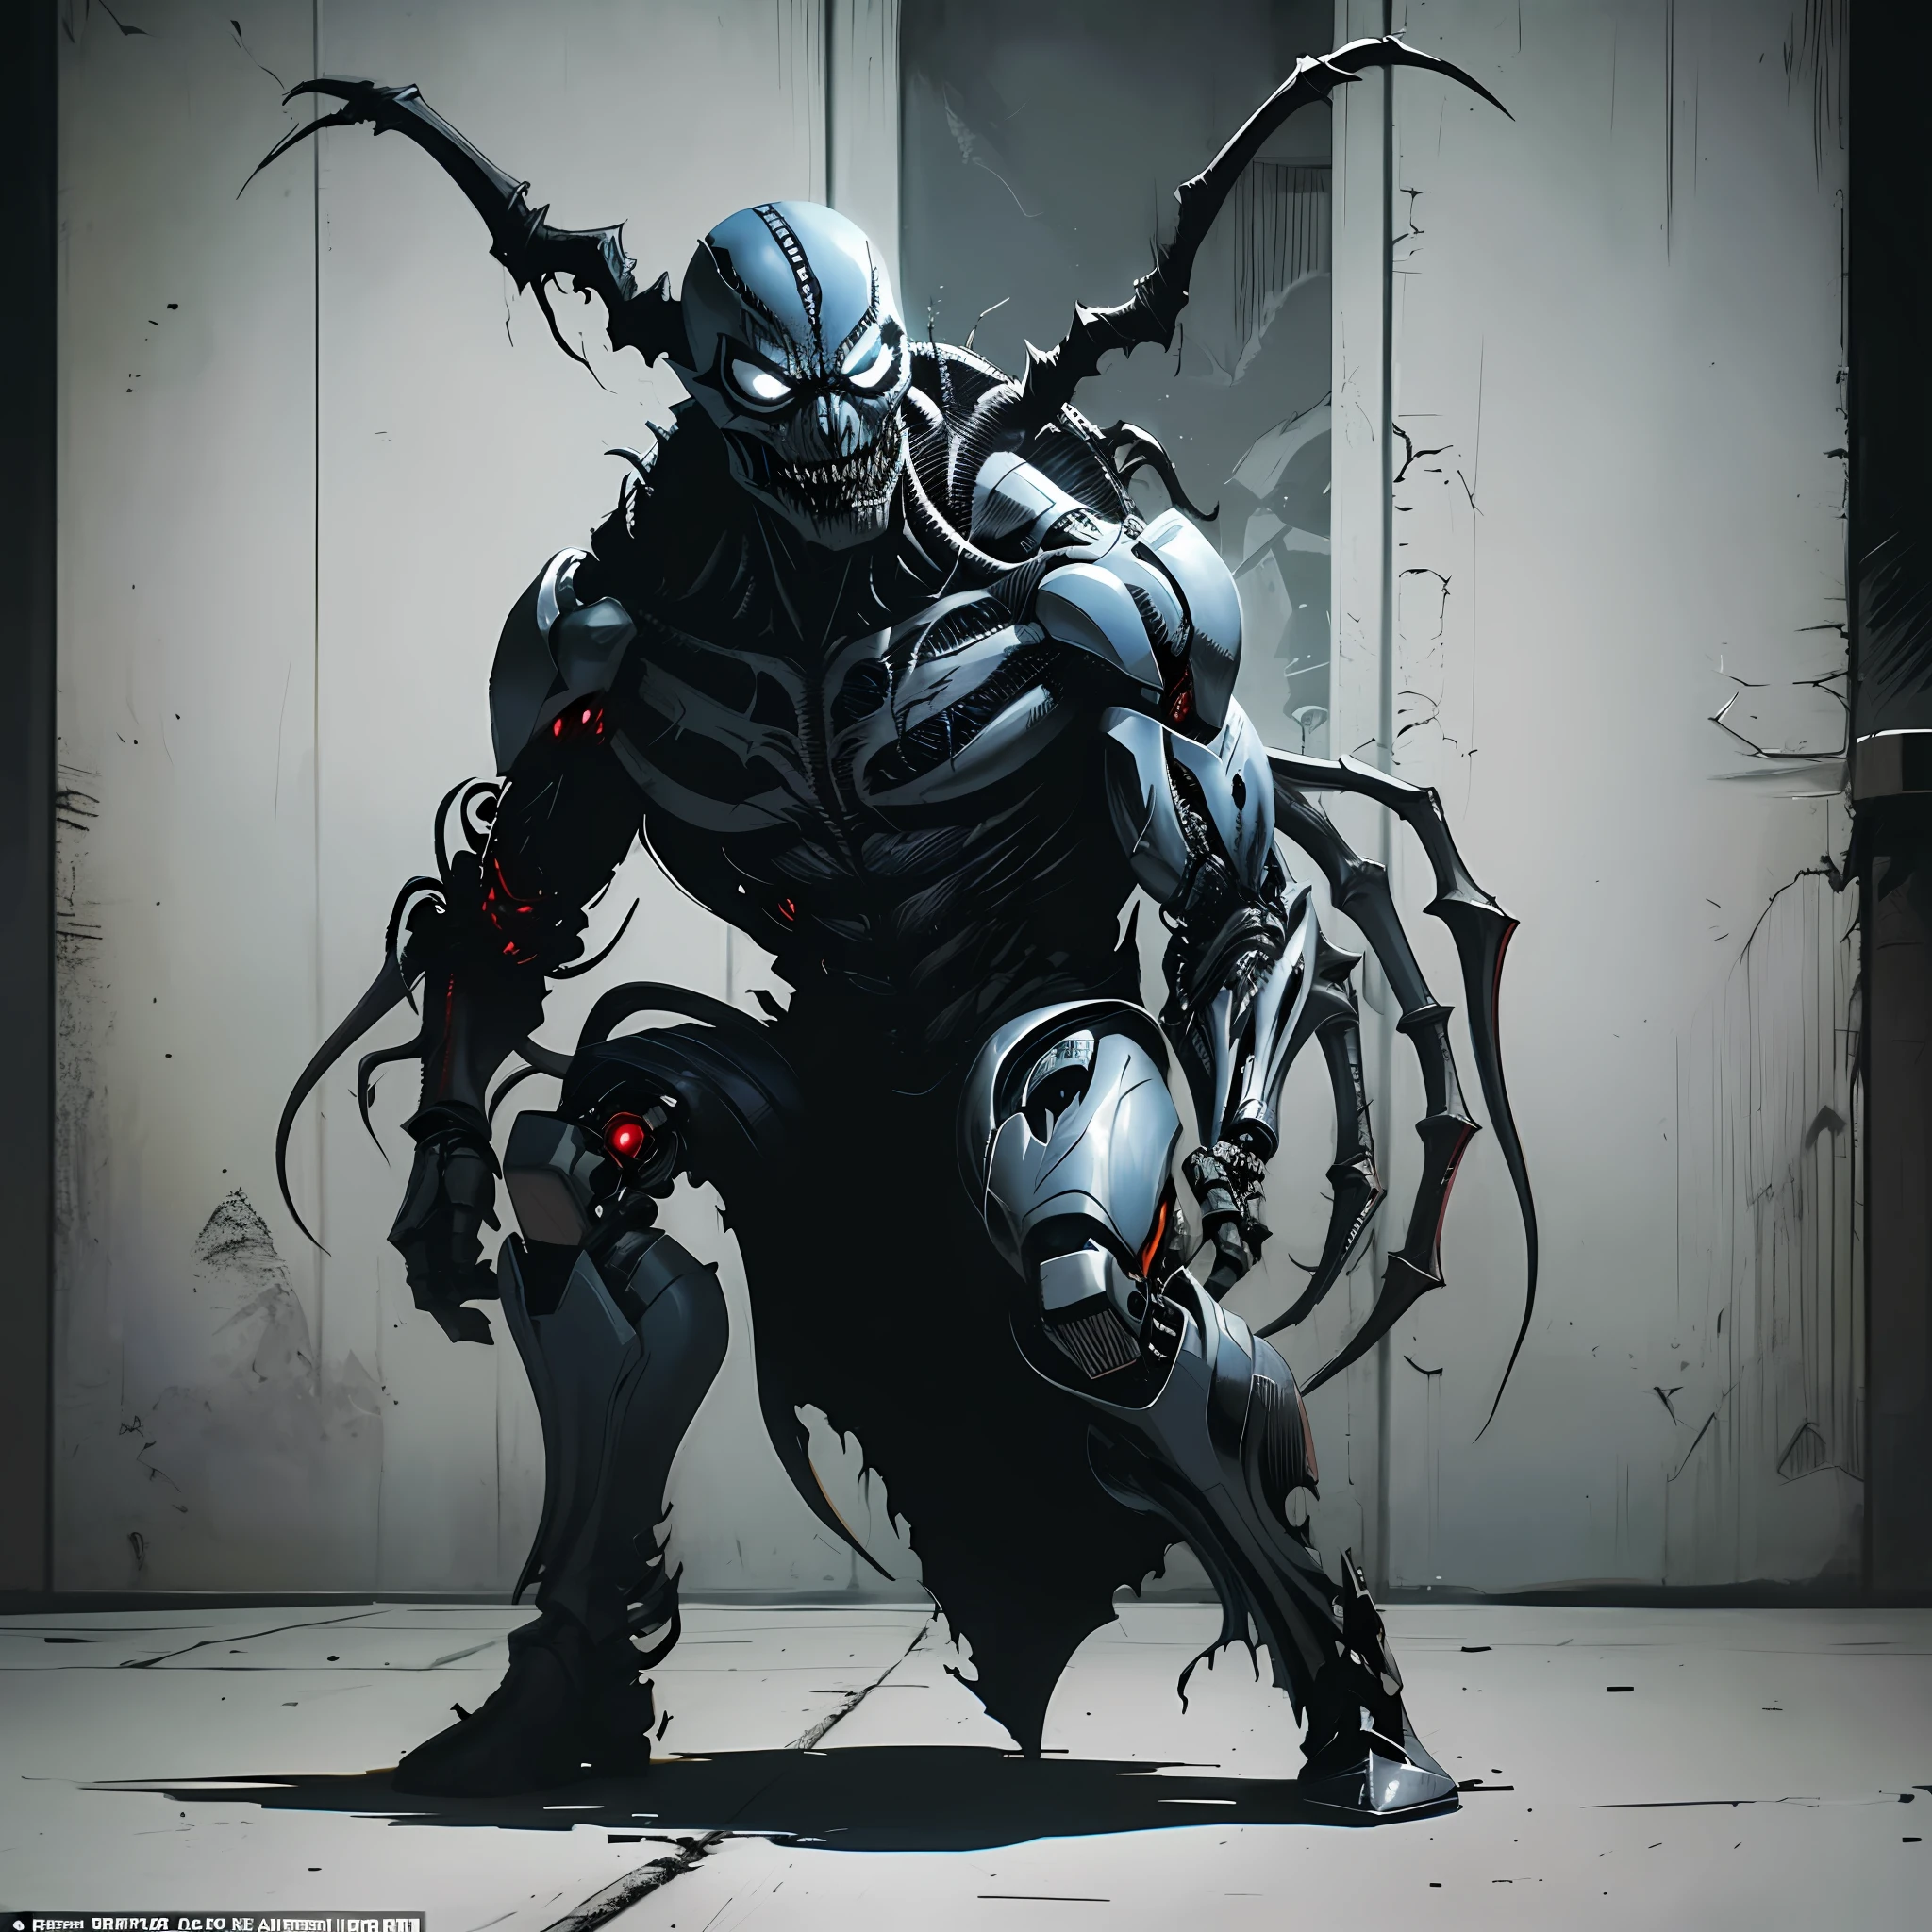 Venom Symbiote에 감염된 사악한 사이보그 Demon Spawn, Todd McFarlane의 작품에서 영감을 받은 작품, Image Comics와 DC Comics의 어둡고 투박한 분위기를 포착. 전장을 배경으로 한 액션으로 가득 찬 샷 세트, 무섭고 악랄한 존재를 묘사. 단일 문자 전신 렌더링, 걸작